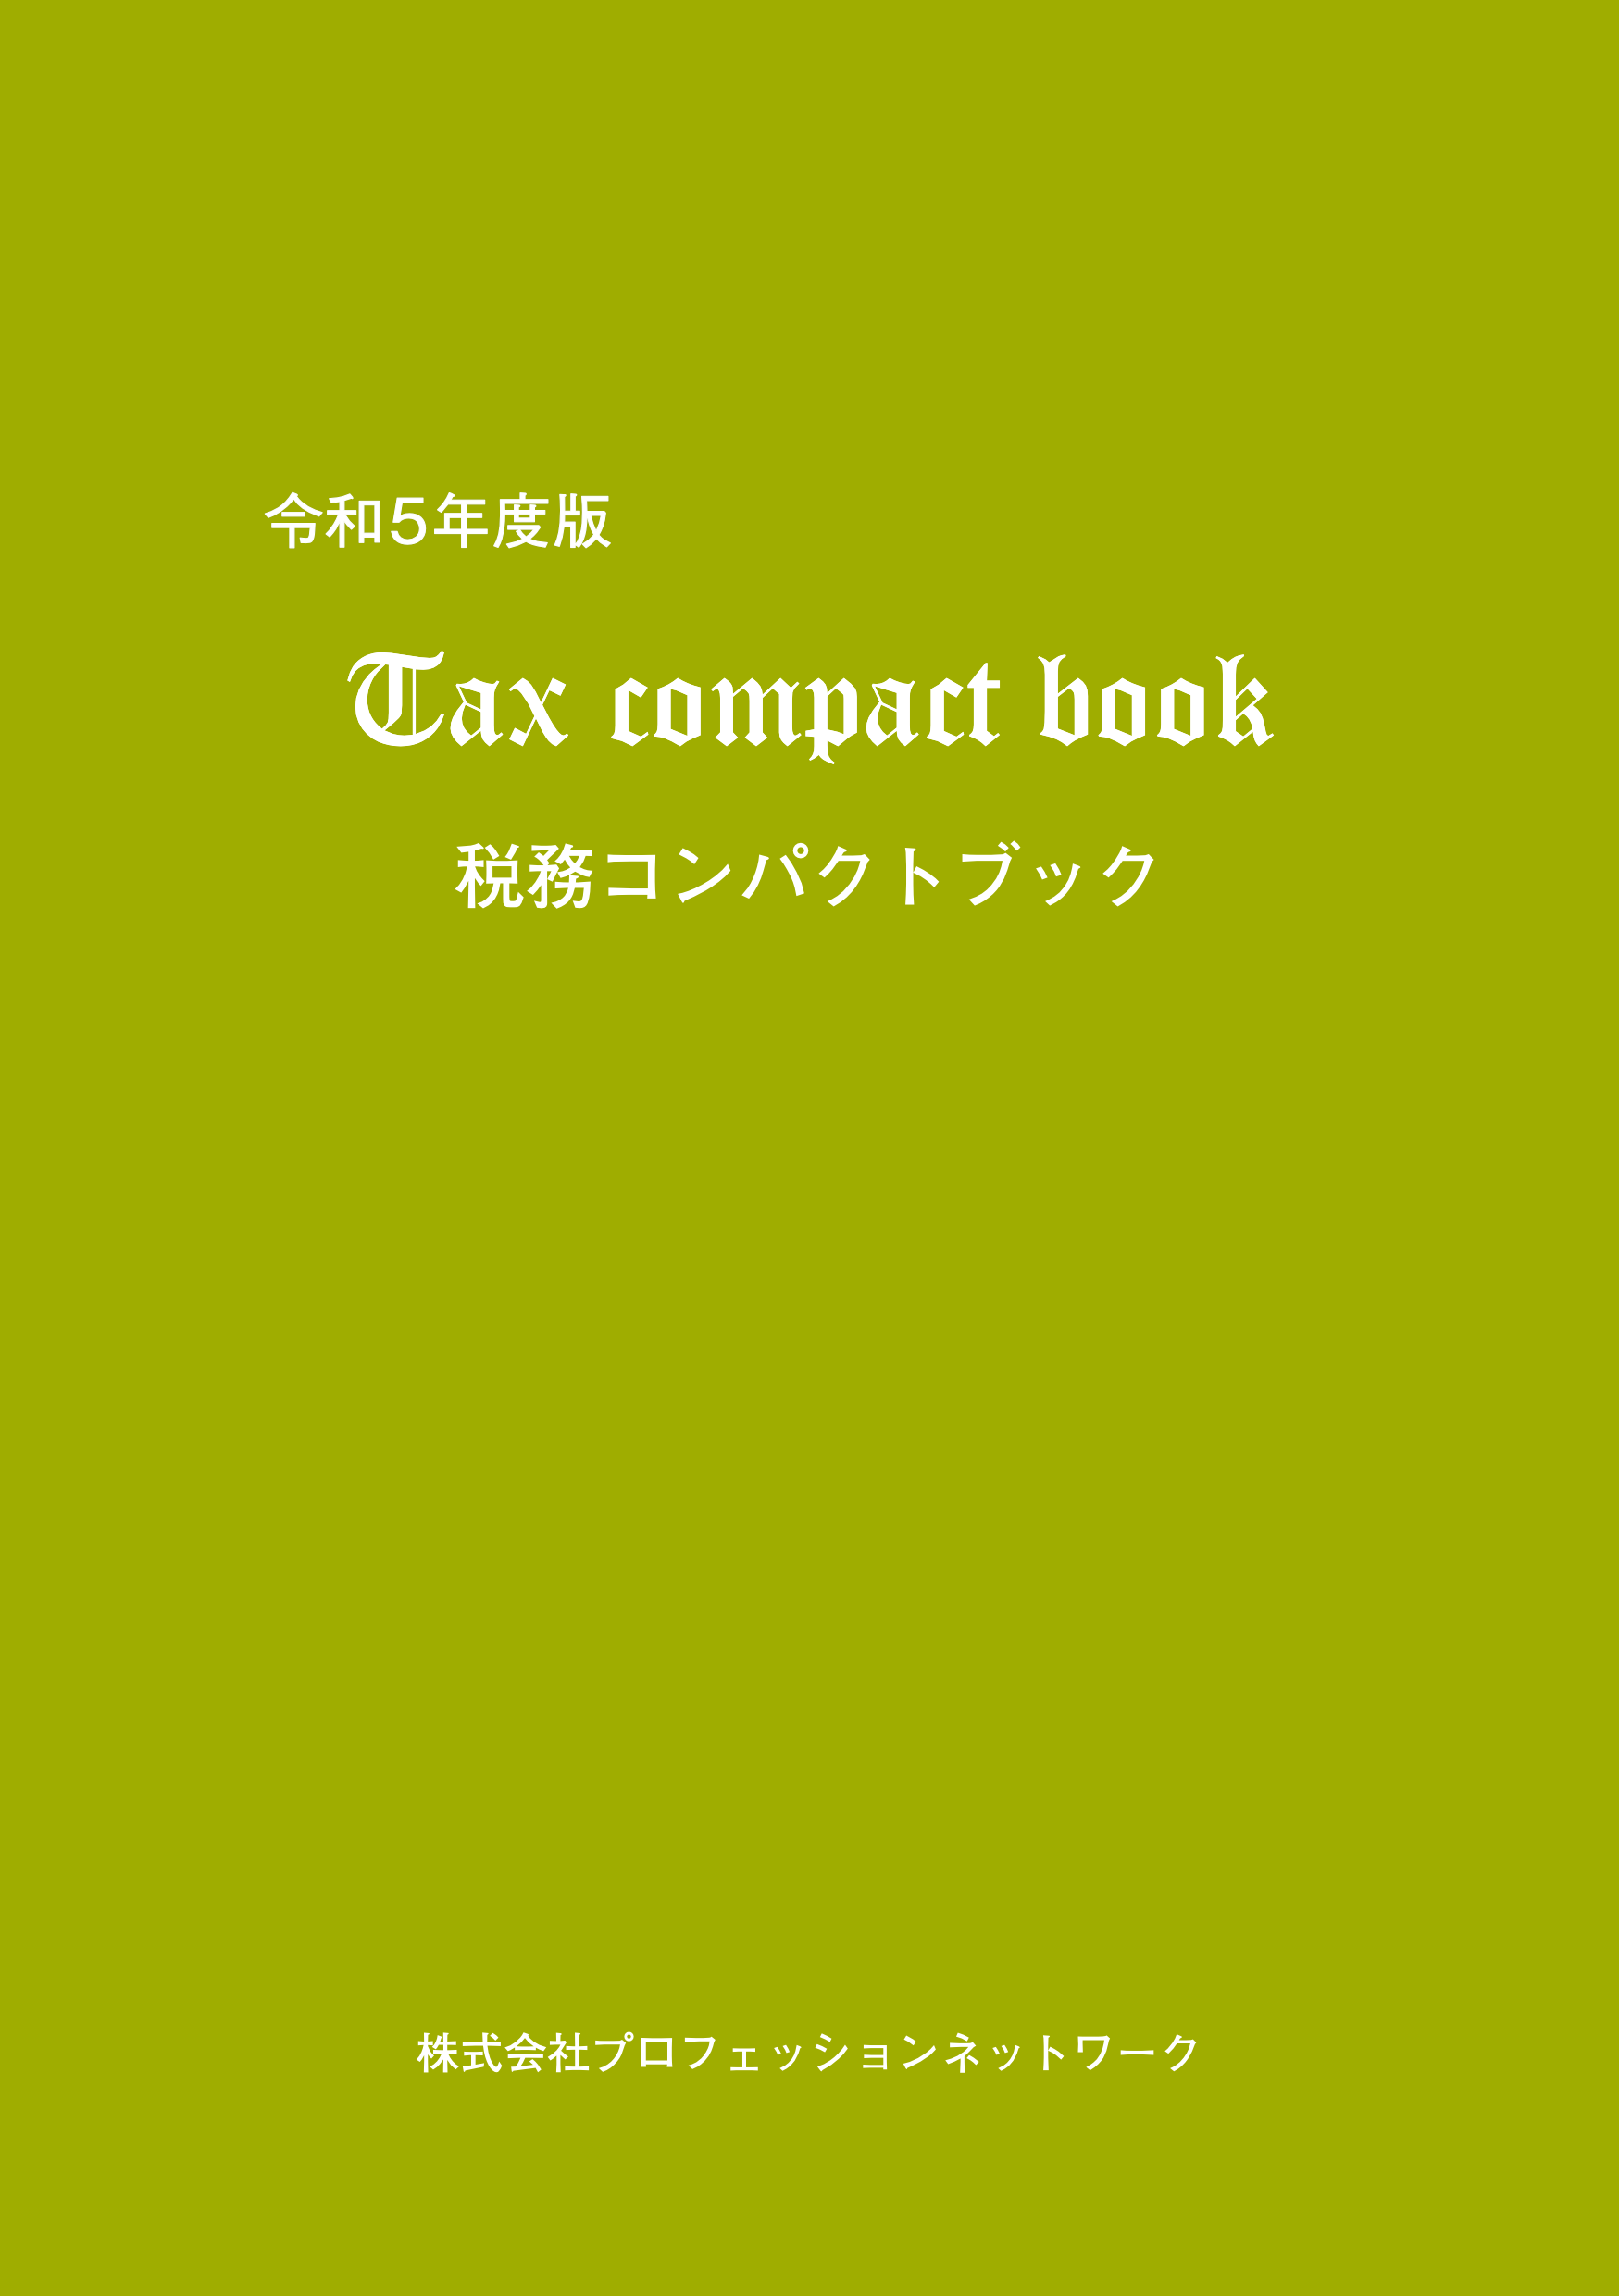 『税務コンパクトブック』（令和5年度版）